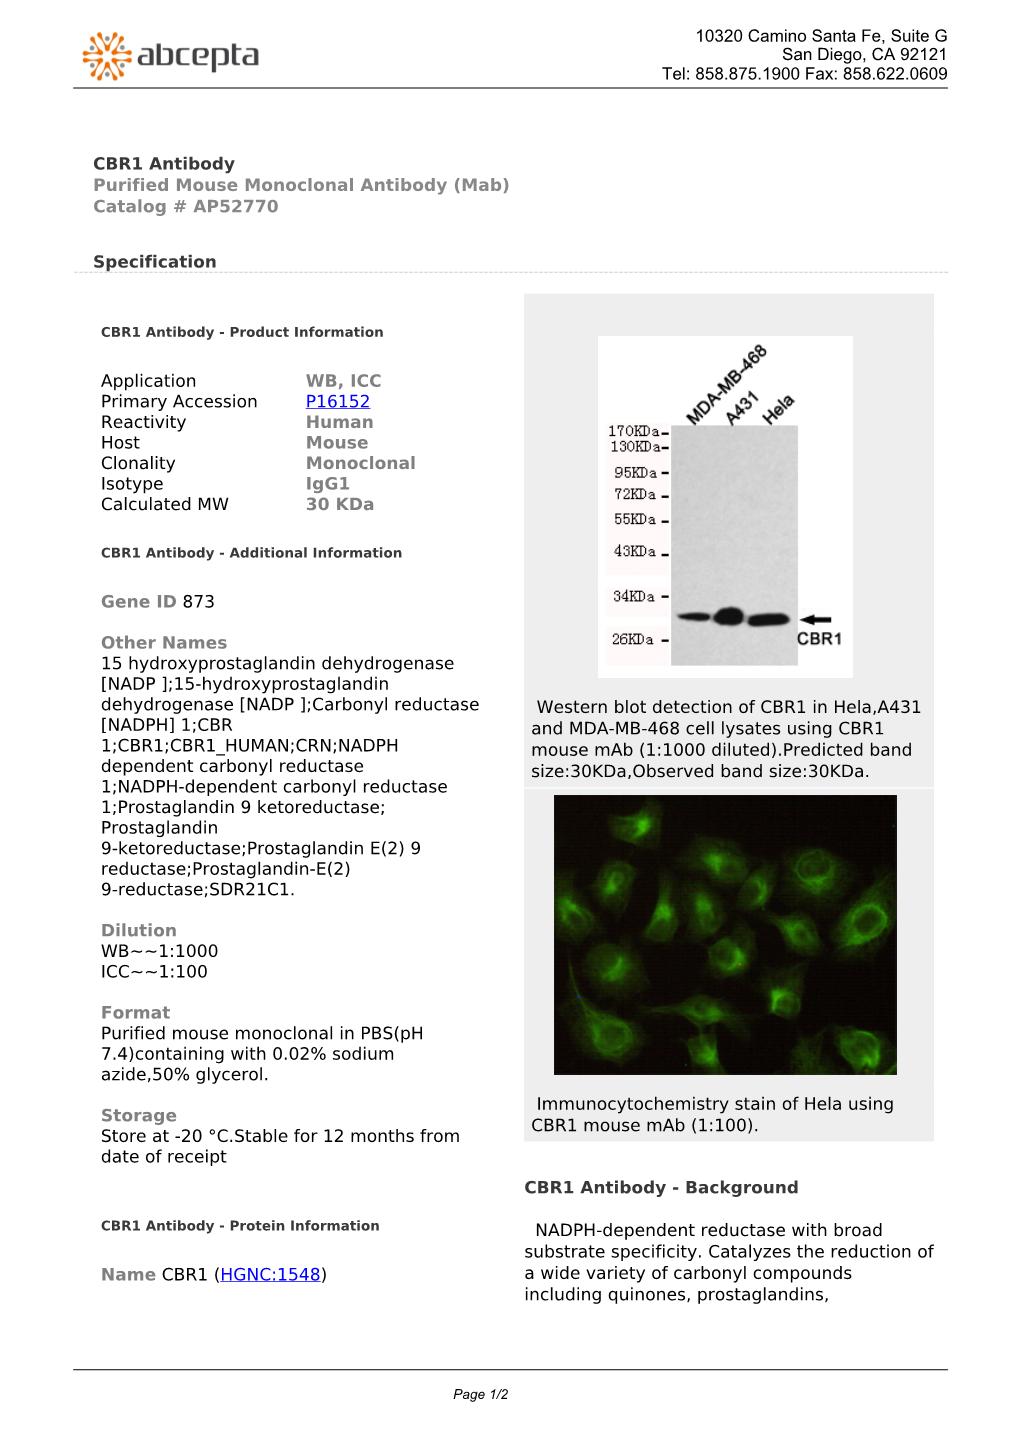 CBR1 Antibody Purified Mouse Monoclonal Antibody (Mab) Catalog # AP52770